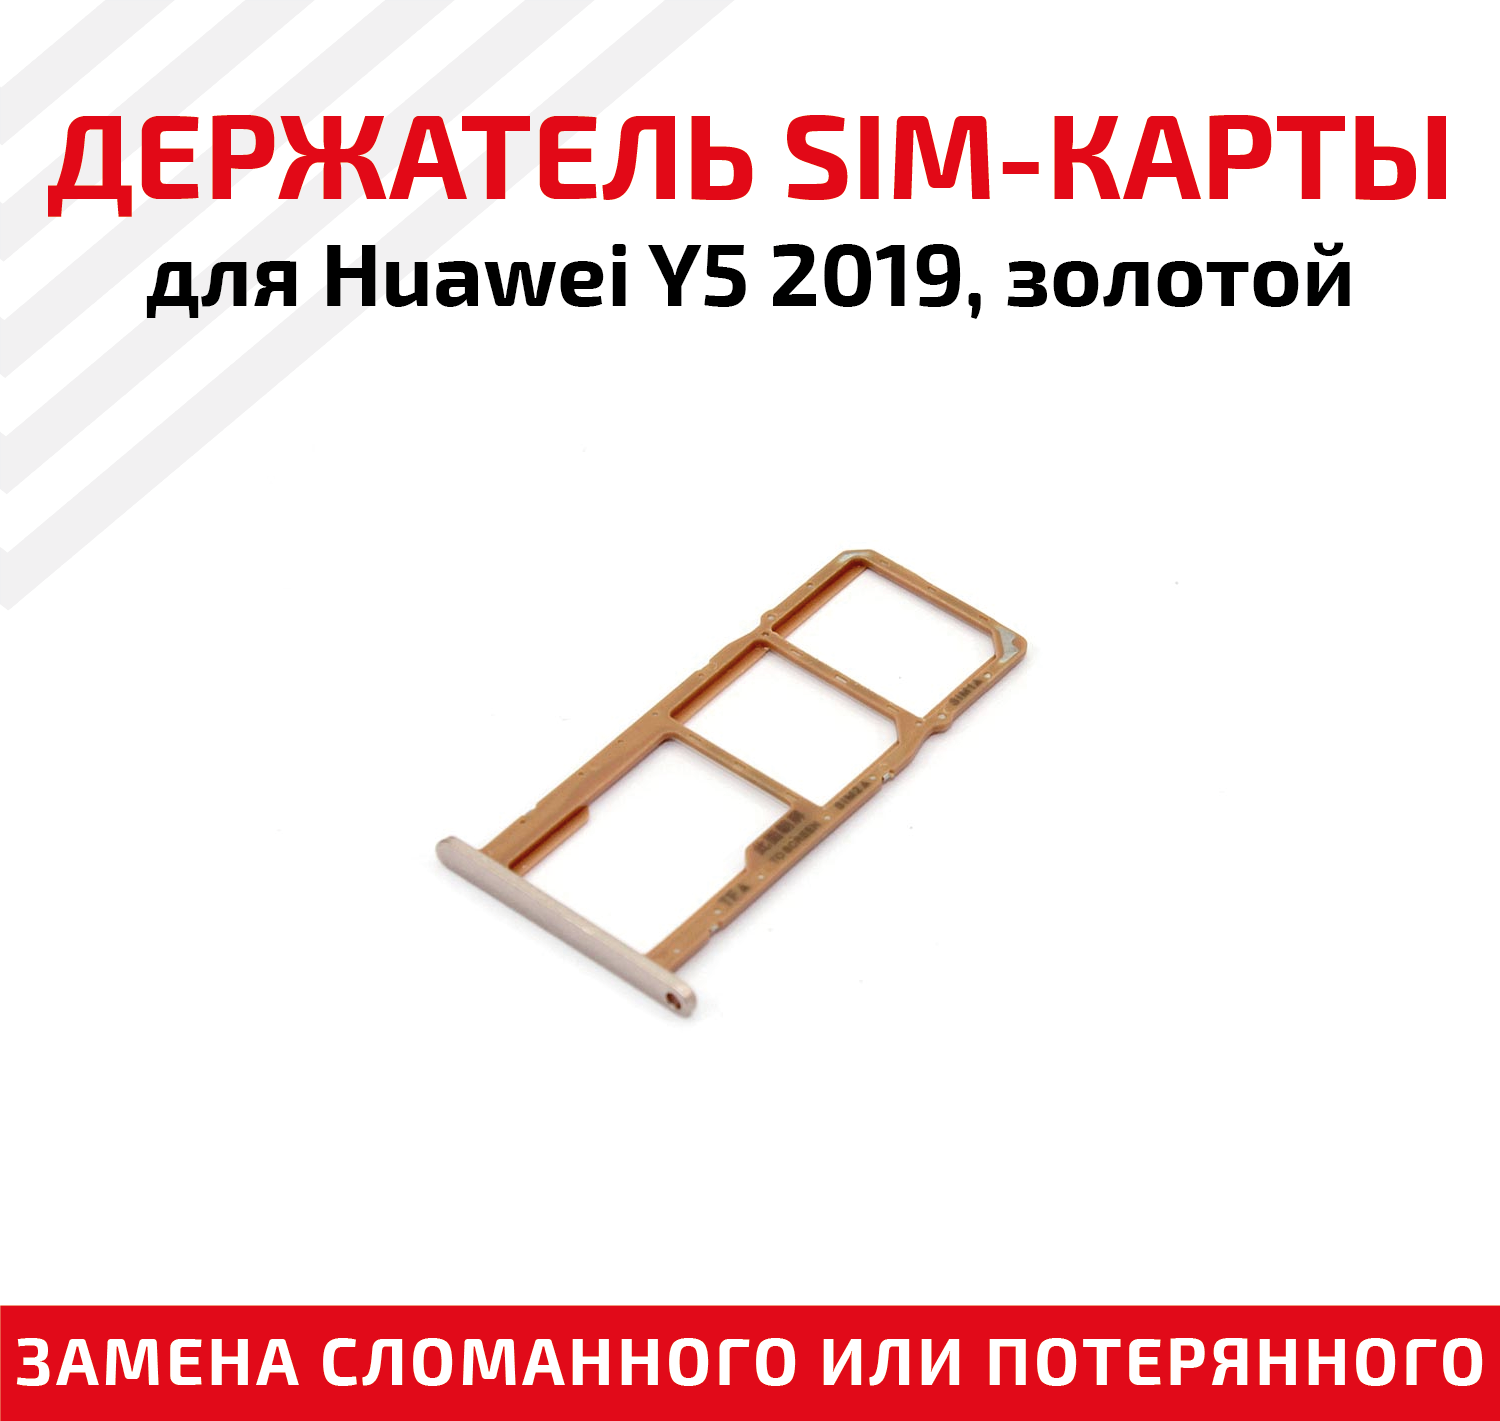 Лоток (держатель, контейнер, слот) SIM-карты для мобильного телефона (смартфона) Huawei Y5 2019, золотой